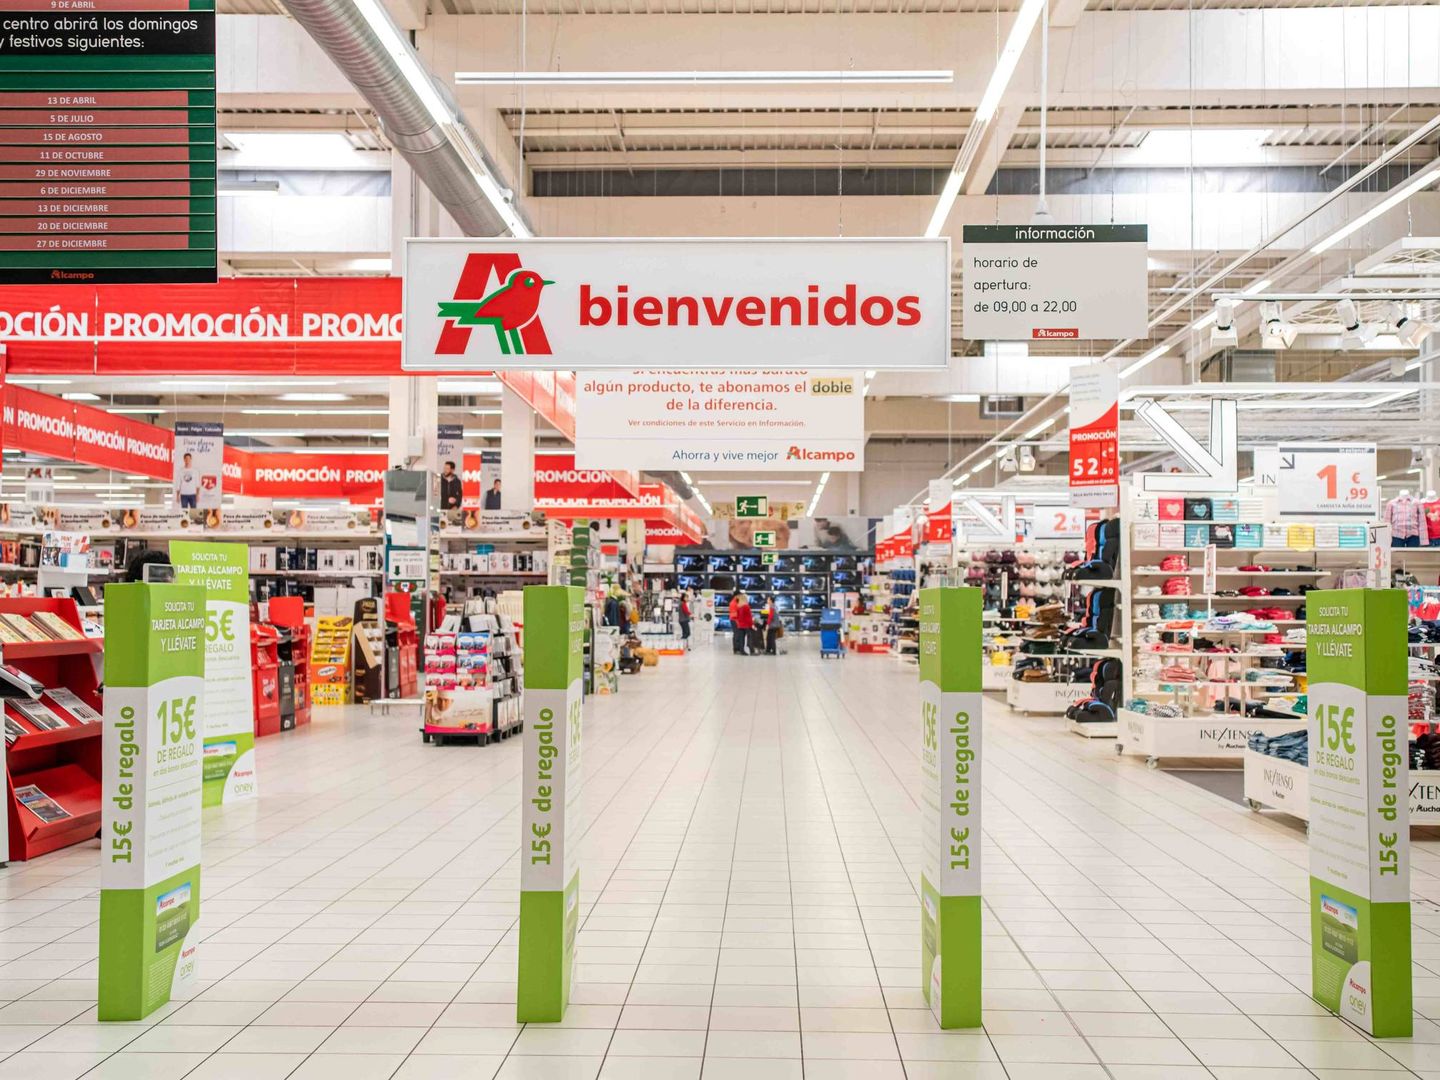 Los supermercados e hipermercados Alcampo llevan 40 años operando en España.